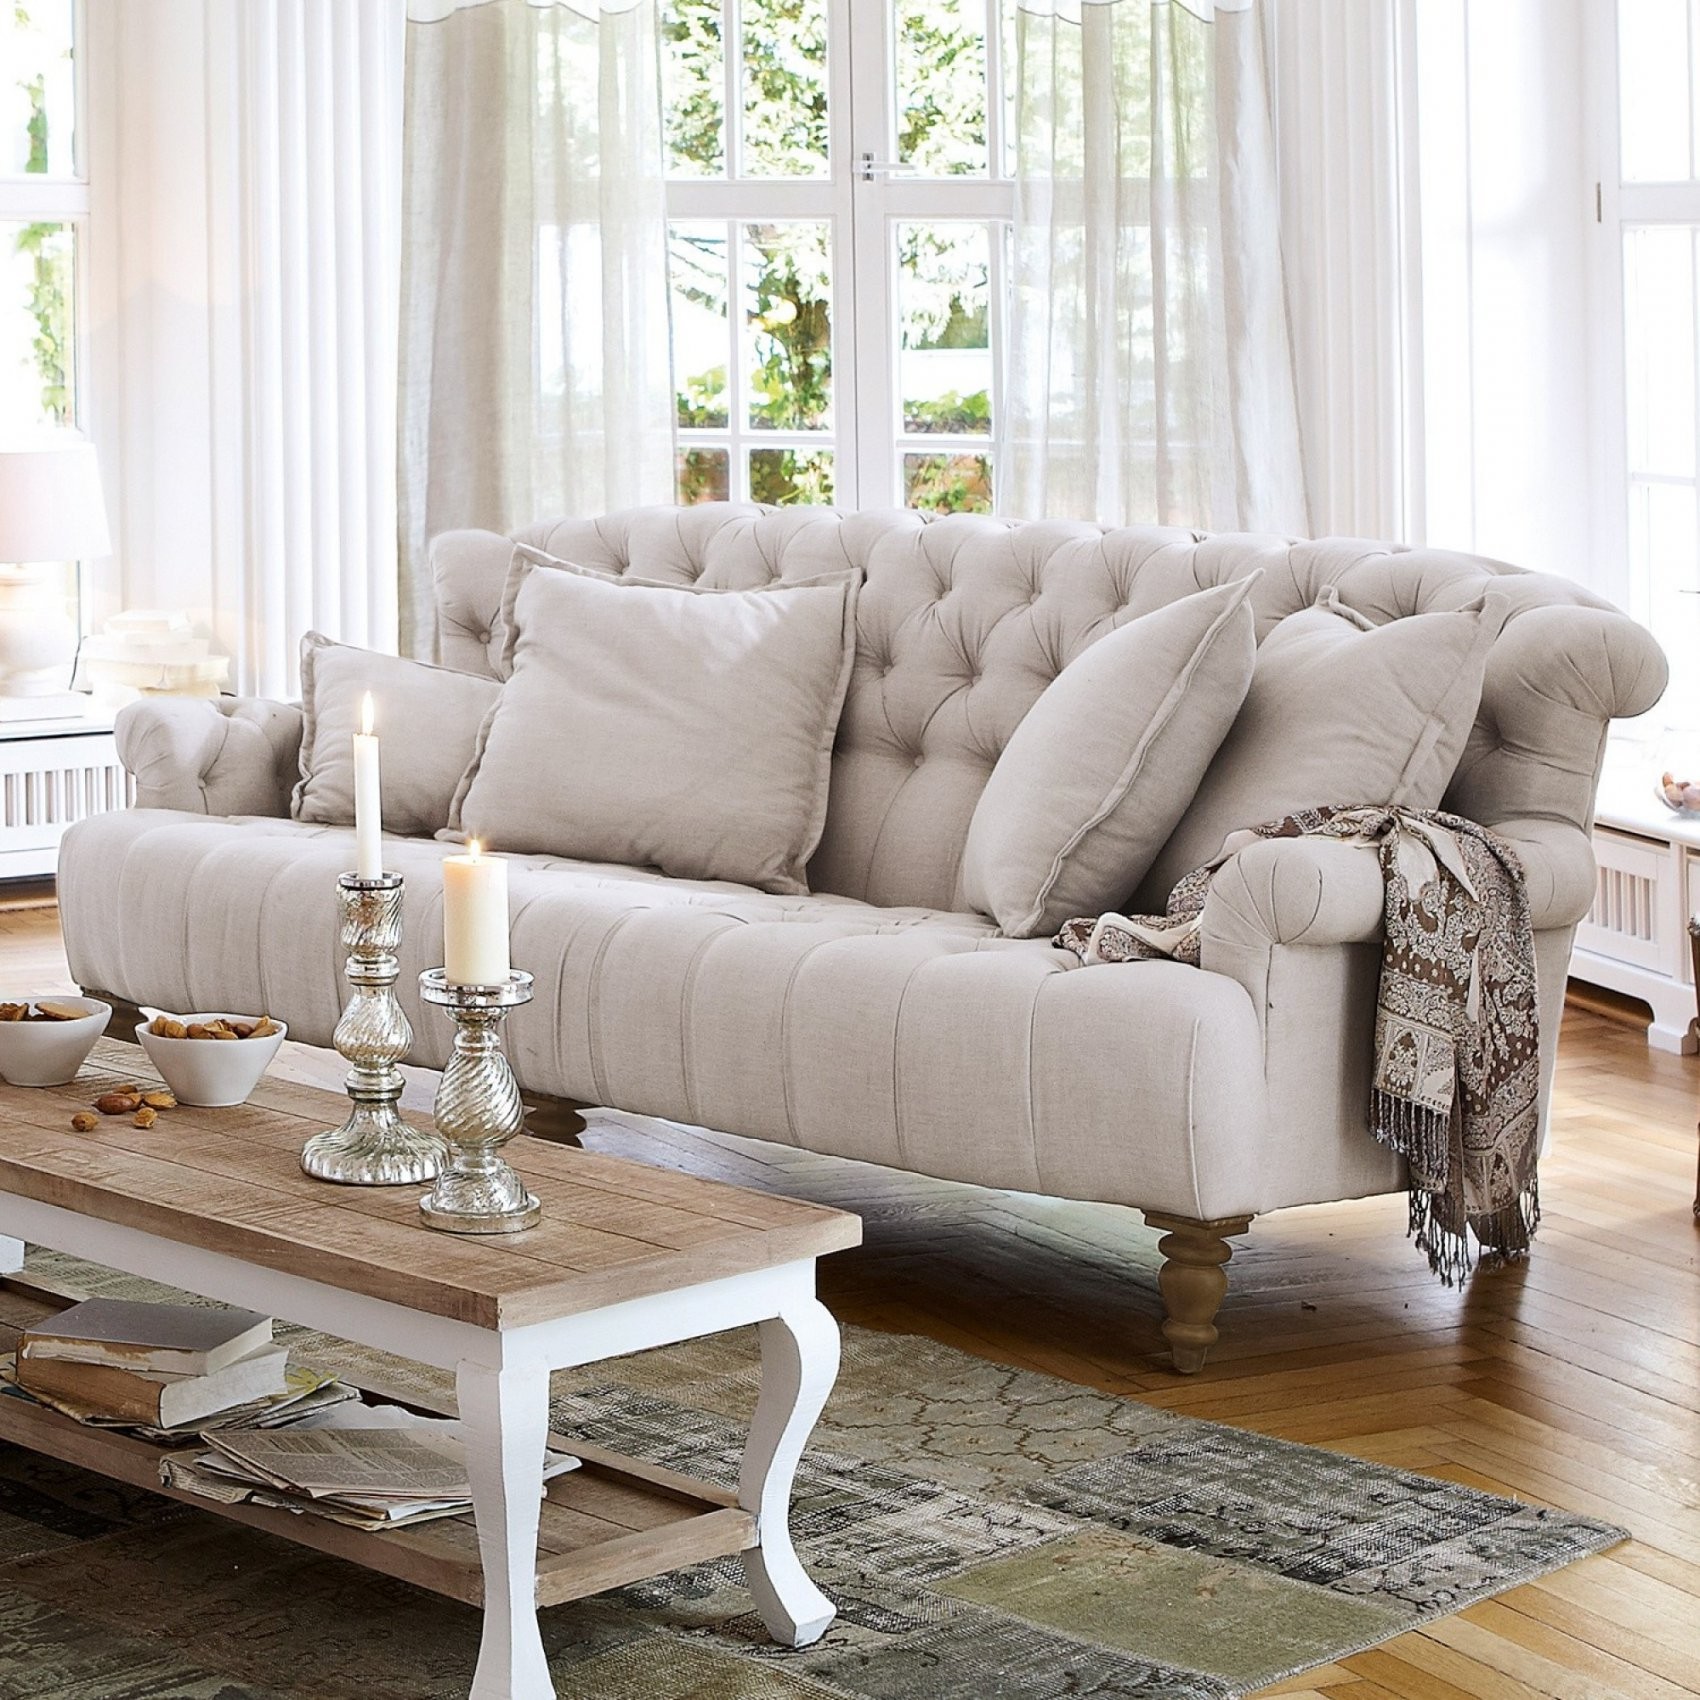 Schick Couch Landhausstil Gebraucht Entwurf 5870 von Sofa Landhausstil Gebraucht Bild